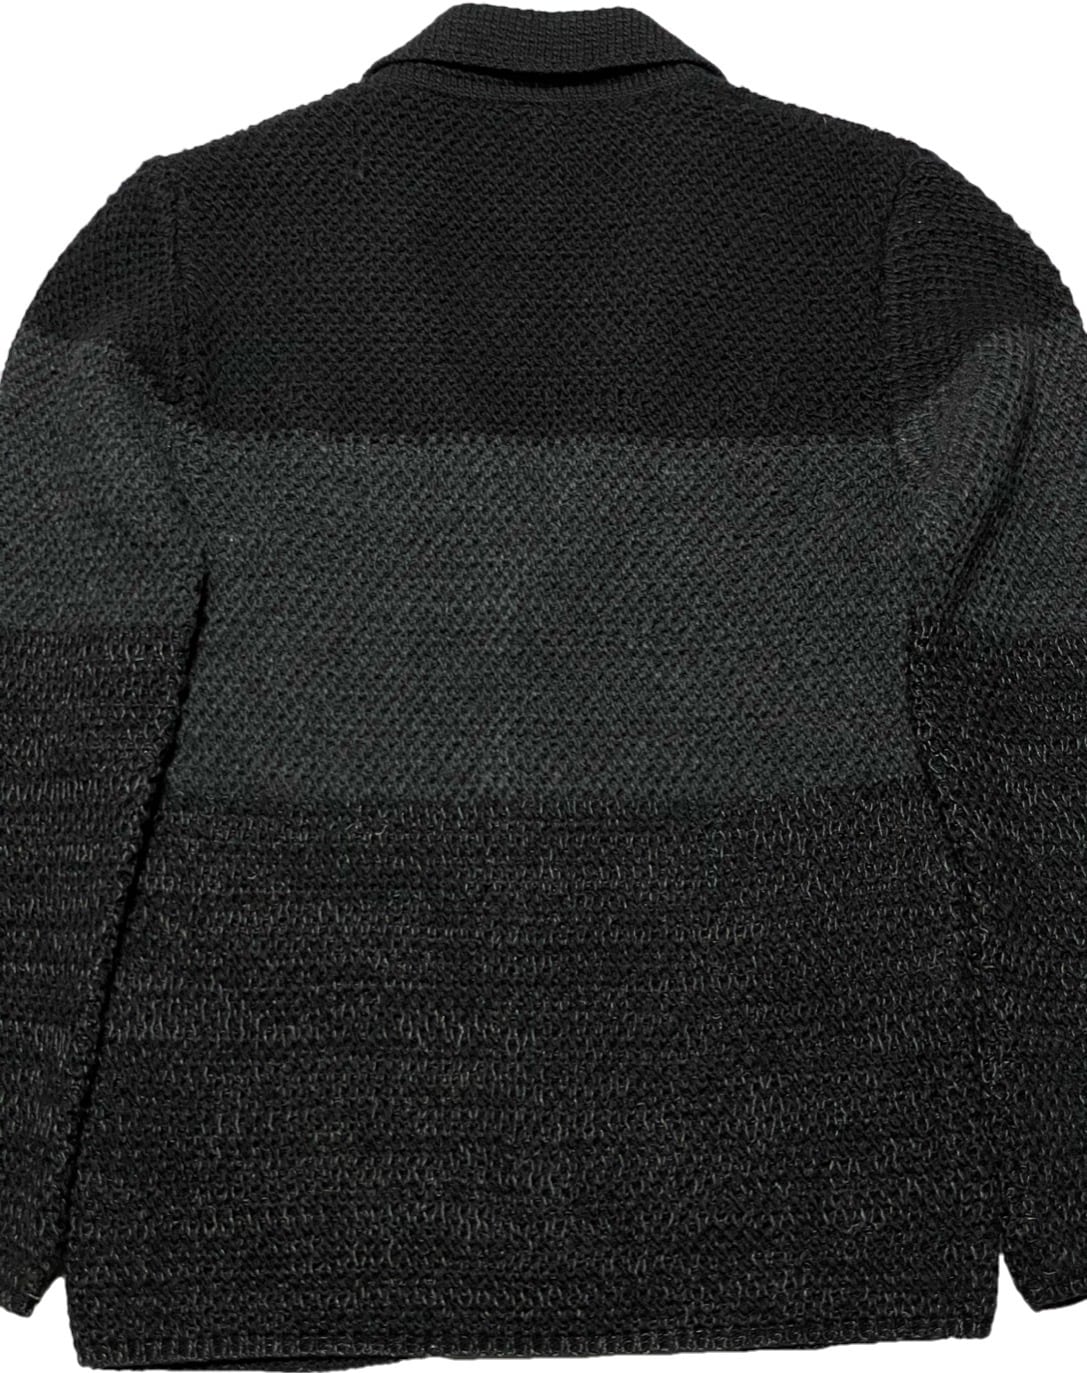 ☆タグ付き新古品☆ MADE IN ITALY製 GIANNI LUPO ニットジャケット ブラック×グレー Lサイズ